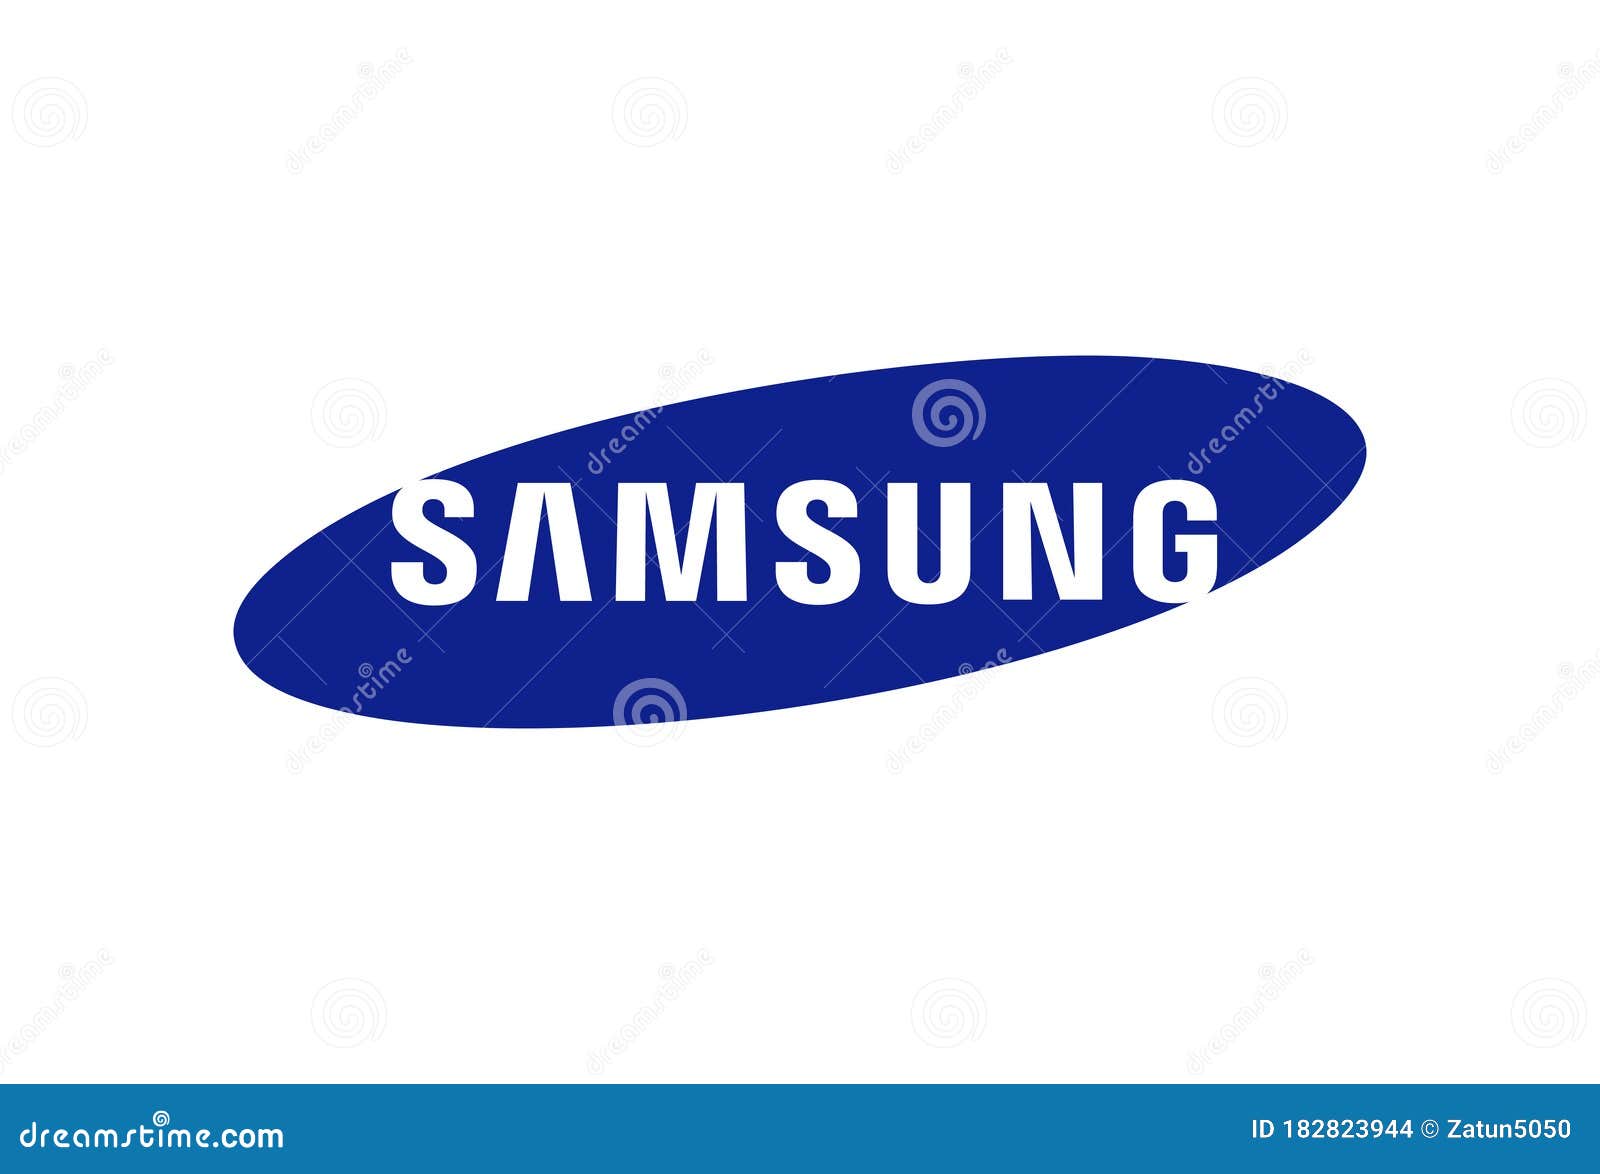 Logo vector độc đáo của Samsung Company là biểu tượng của sự thăng hoa và sự đổi mới. Với thiết kế chuyên nghiệp và độc đáo, logo này đã trở thành một trong những biểu tượng thương hiệu được ưa chuộng nhất trên thế giới. Hãy xem hình ảnh liên quan để cảm nhận được sự sáng tạo và đẳng cấp của Samsung.